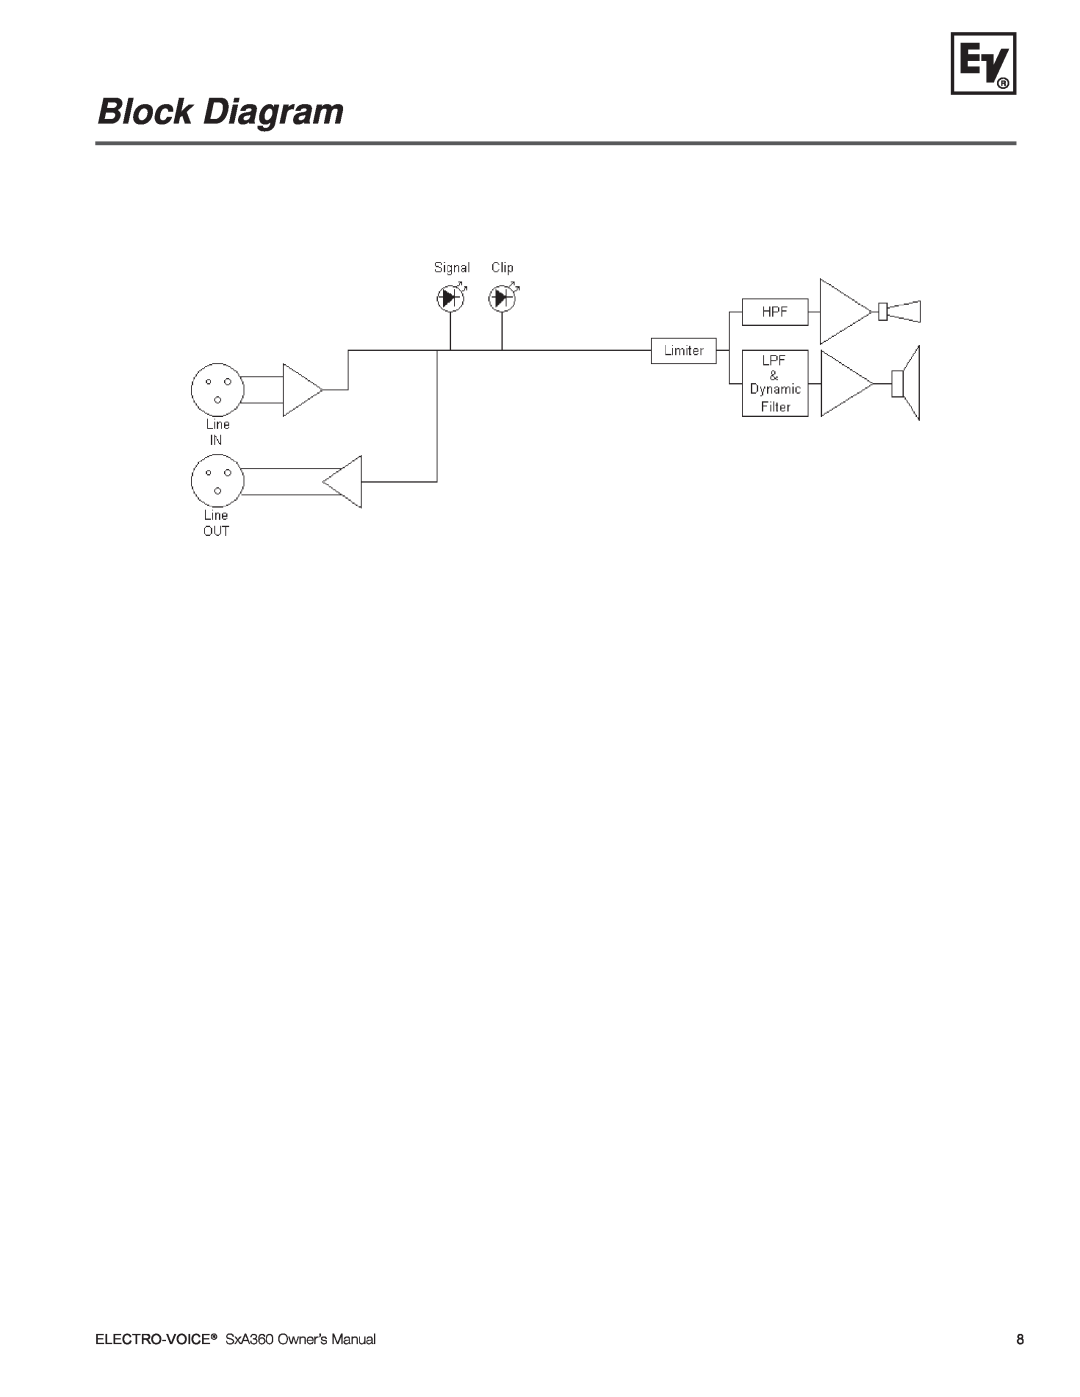 Electro-Voice SxA360 manual Block Diagram, Electro-Voice 